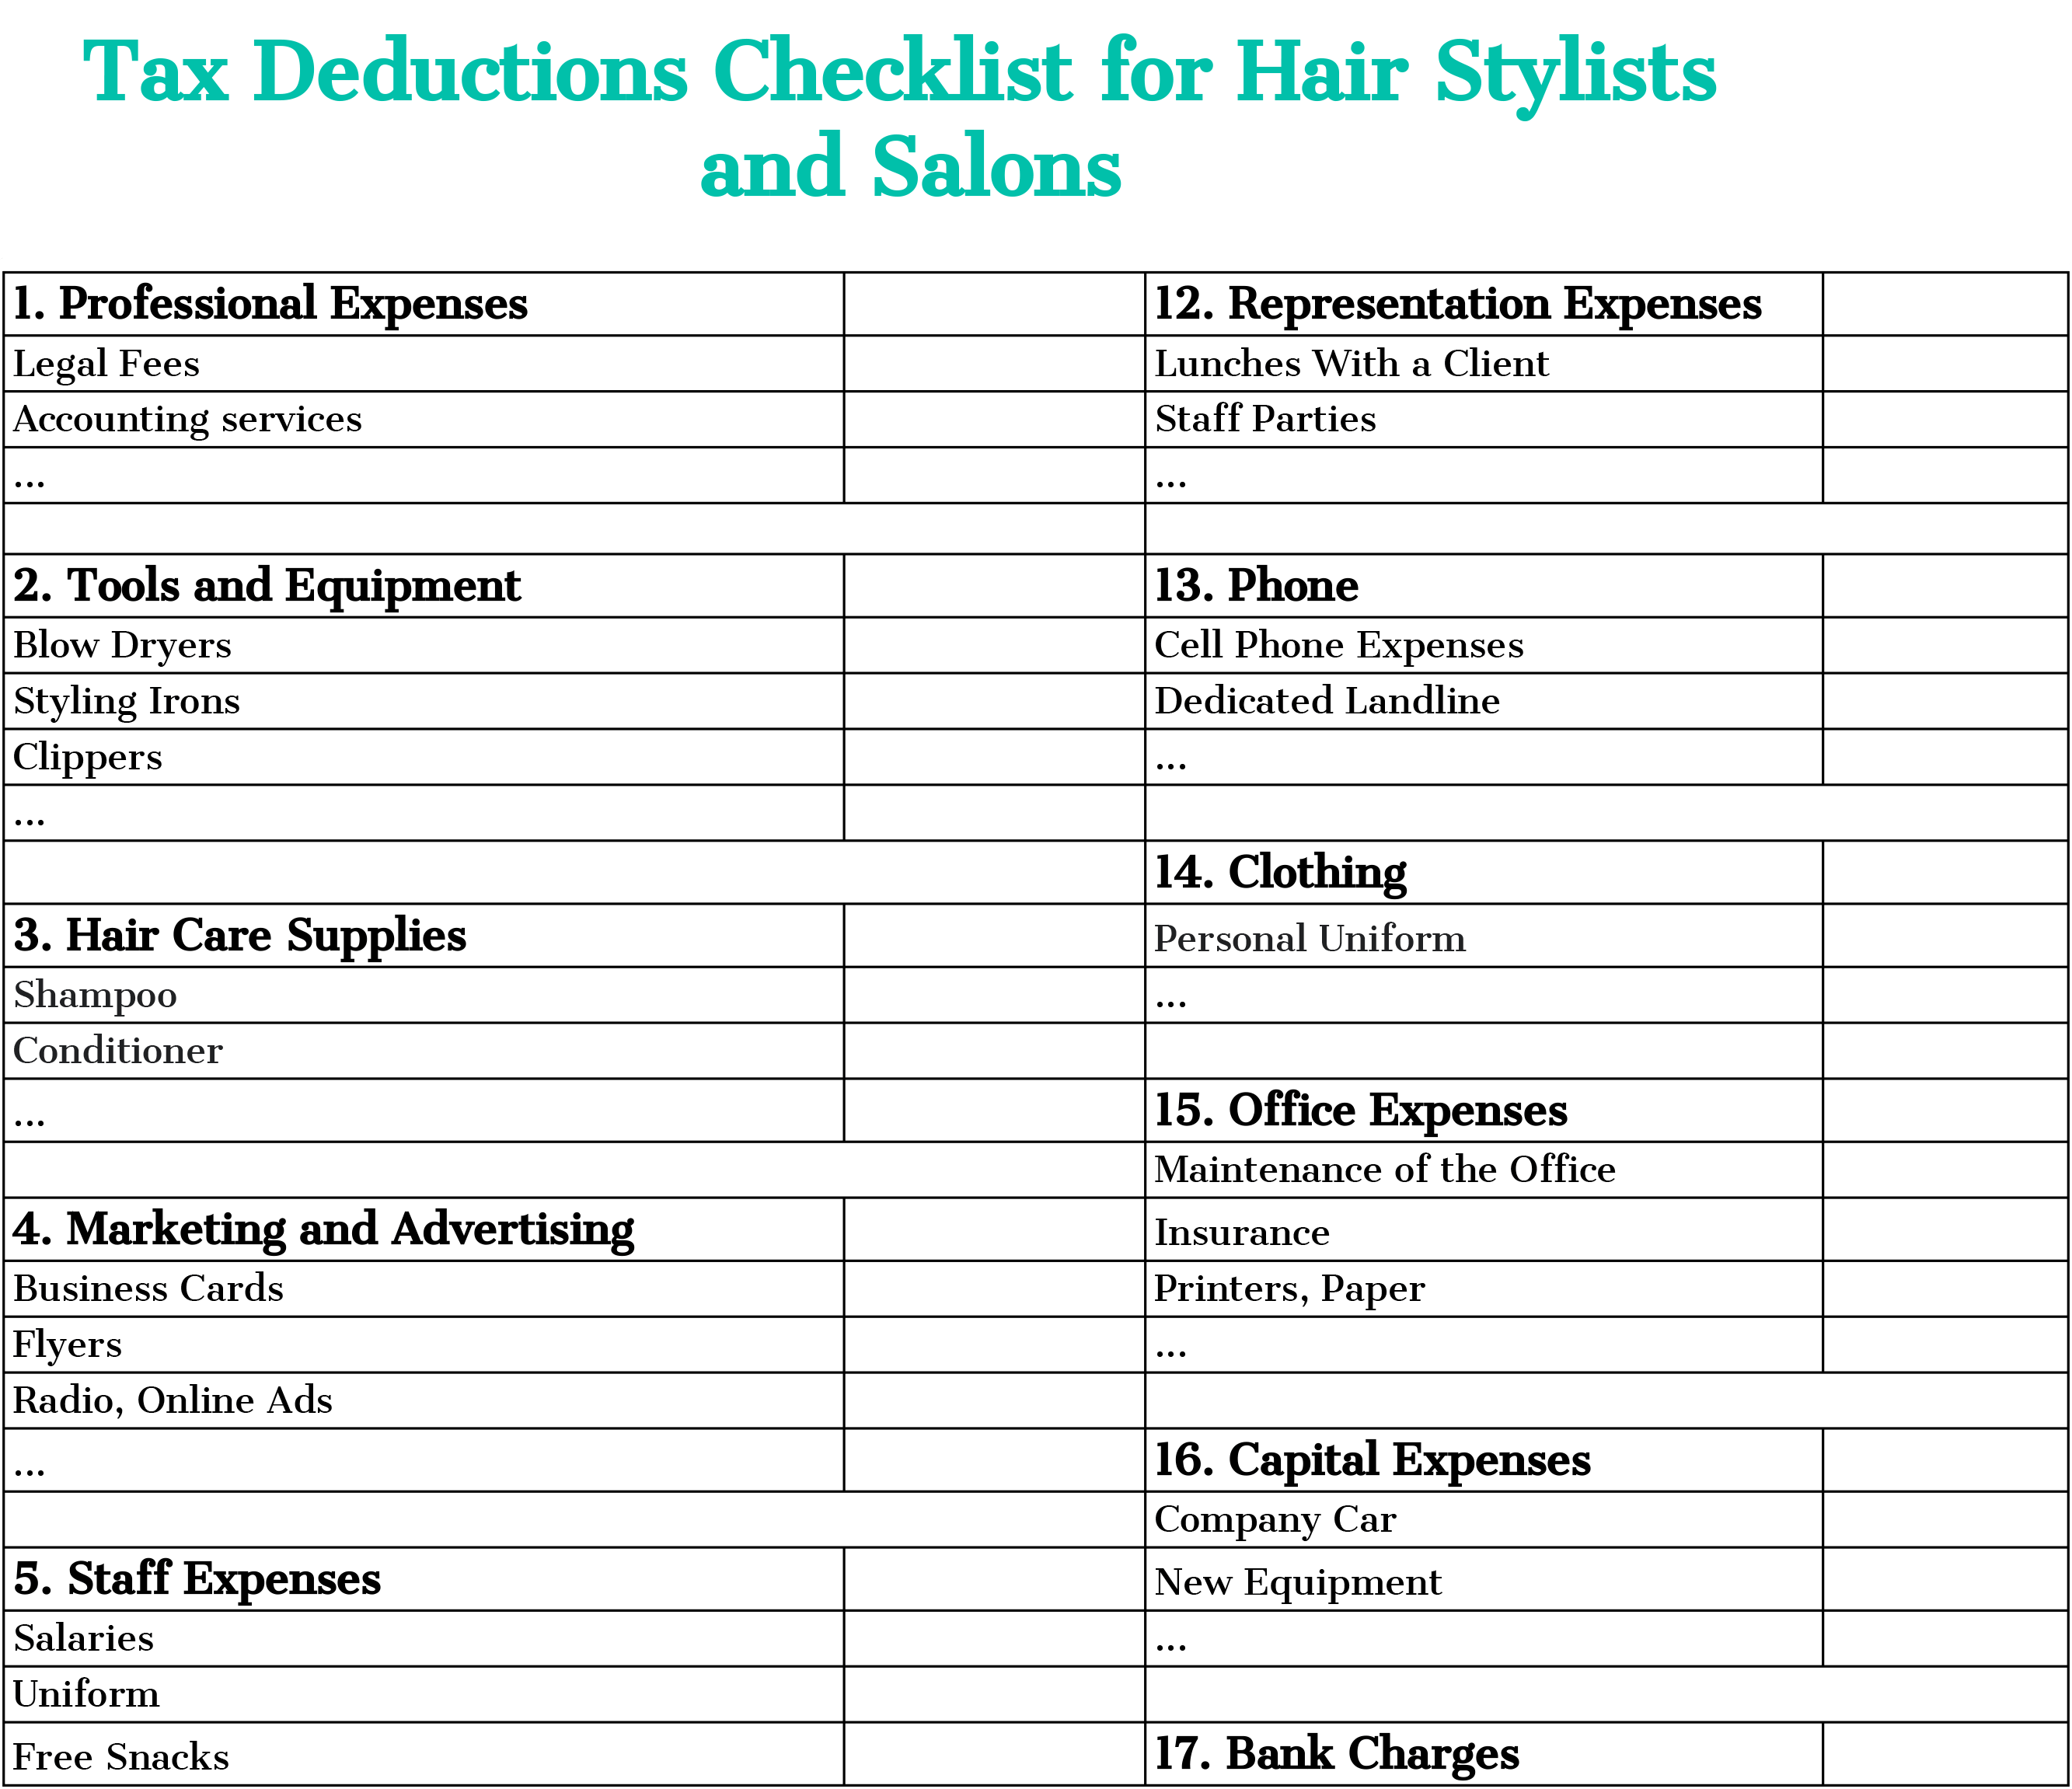 Hairstylist Tax Write Offs Checklist